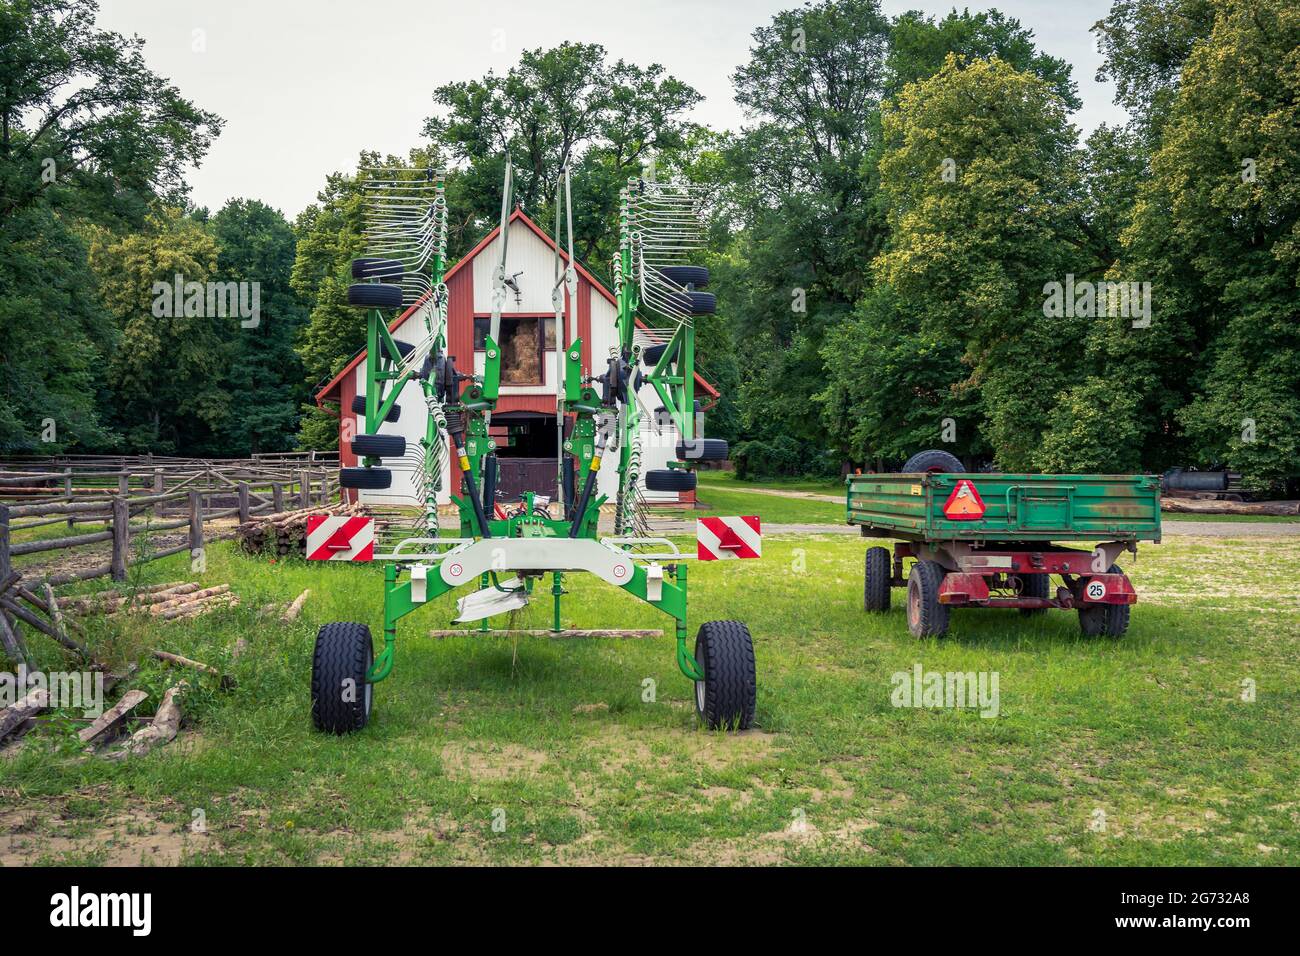 Gebrauchte, bunte landwirtschaftliche Geräte stehen auf einem Bauernhof, umgeben von Bäumen an einem sonnigen Tag Stockfoto